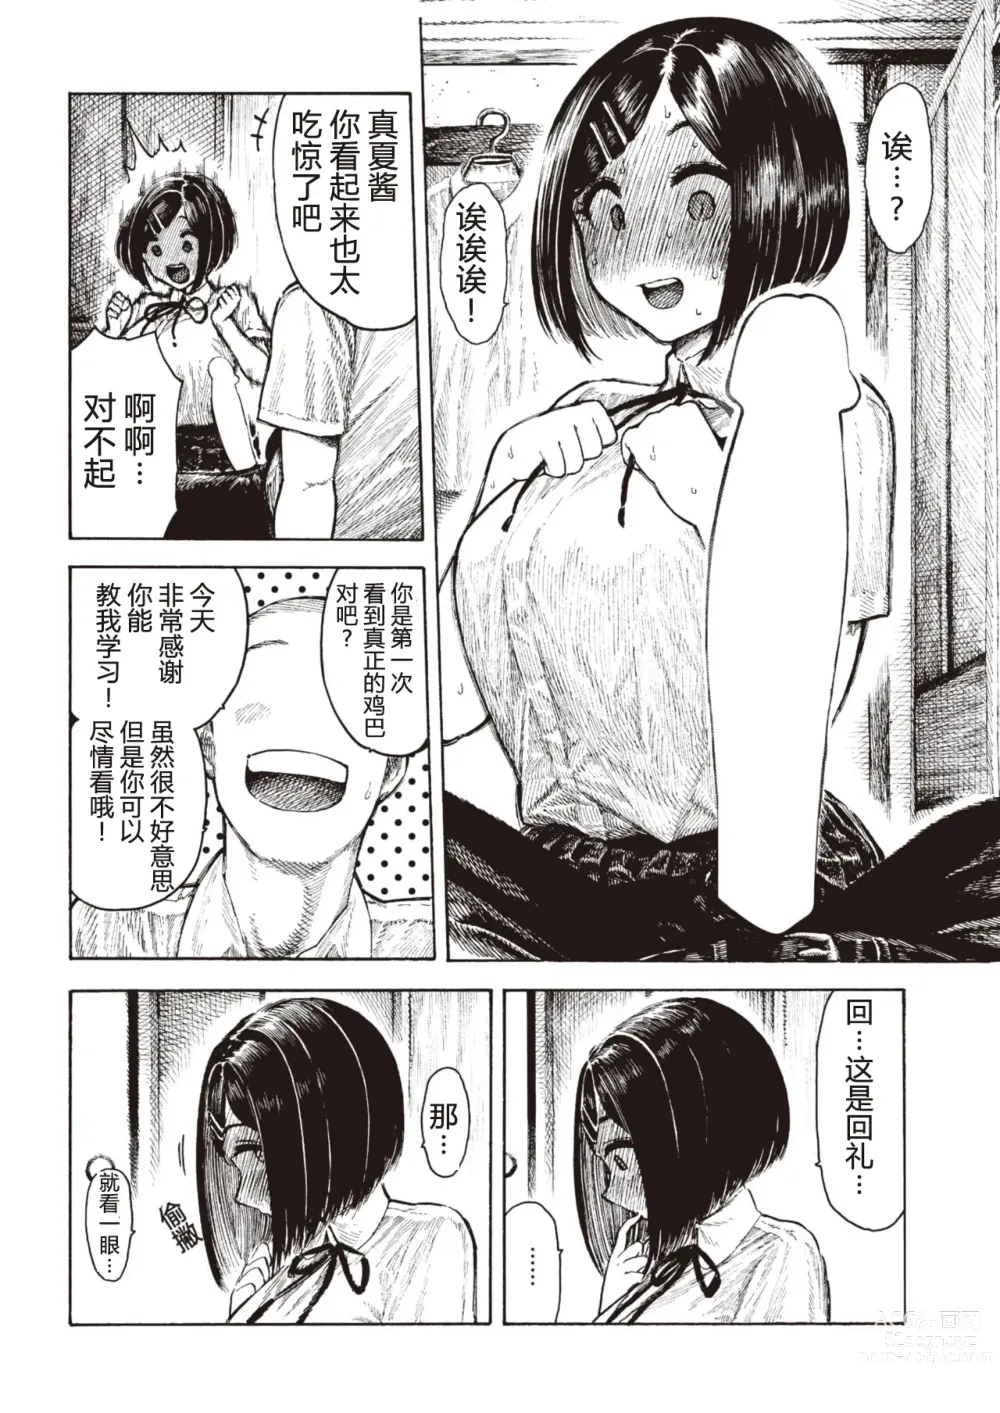 Page 8 of manga Manatsu-chan no Benkyoukai